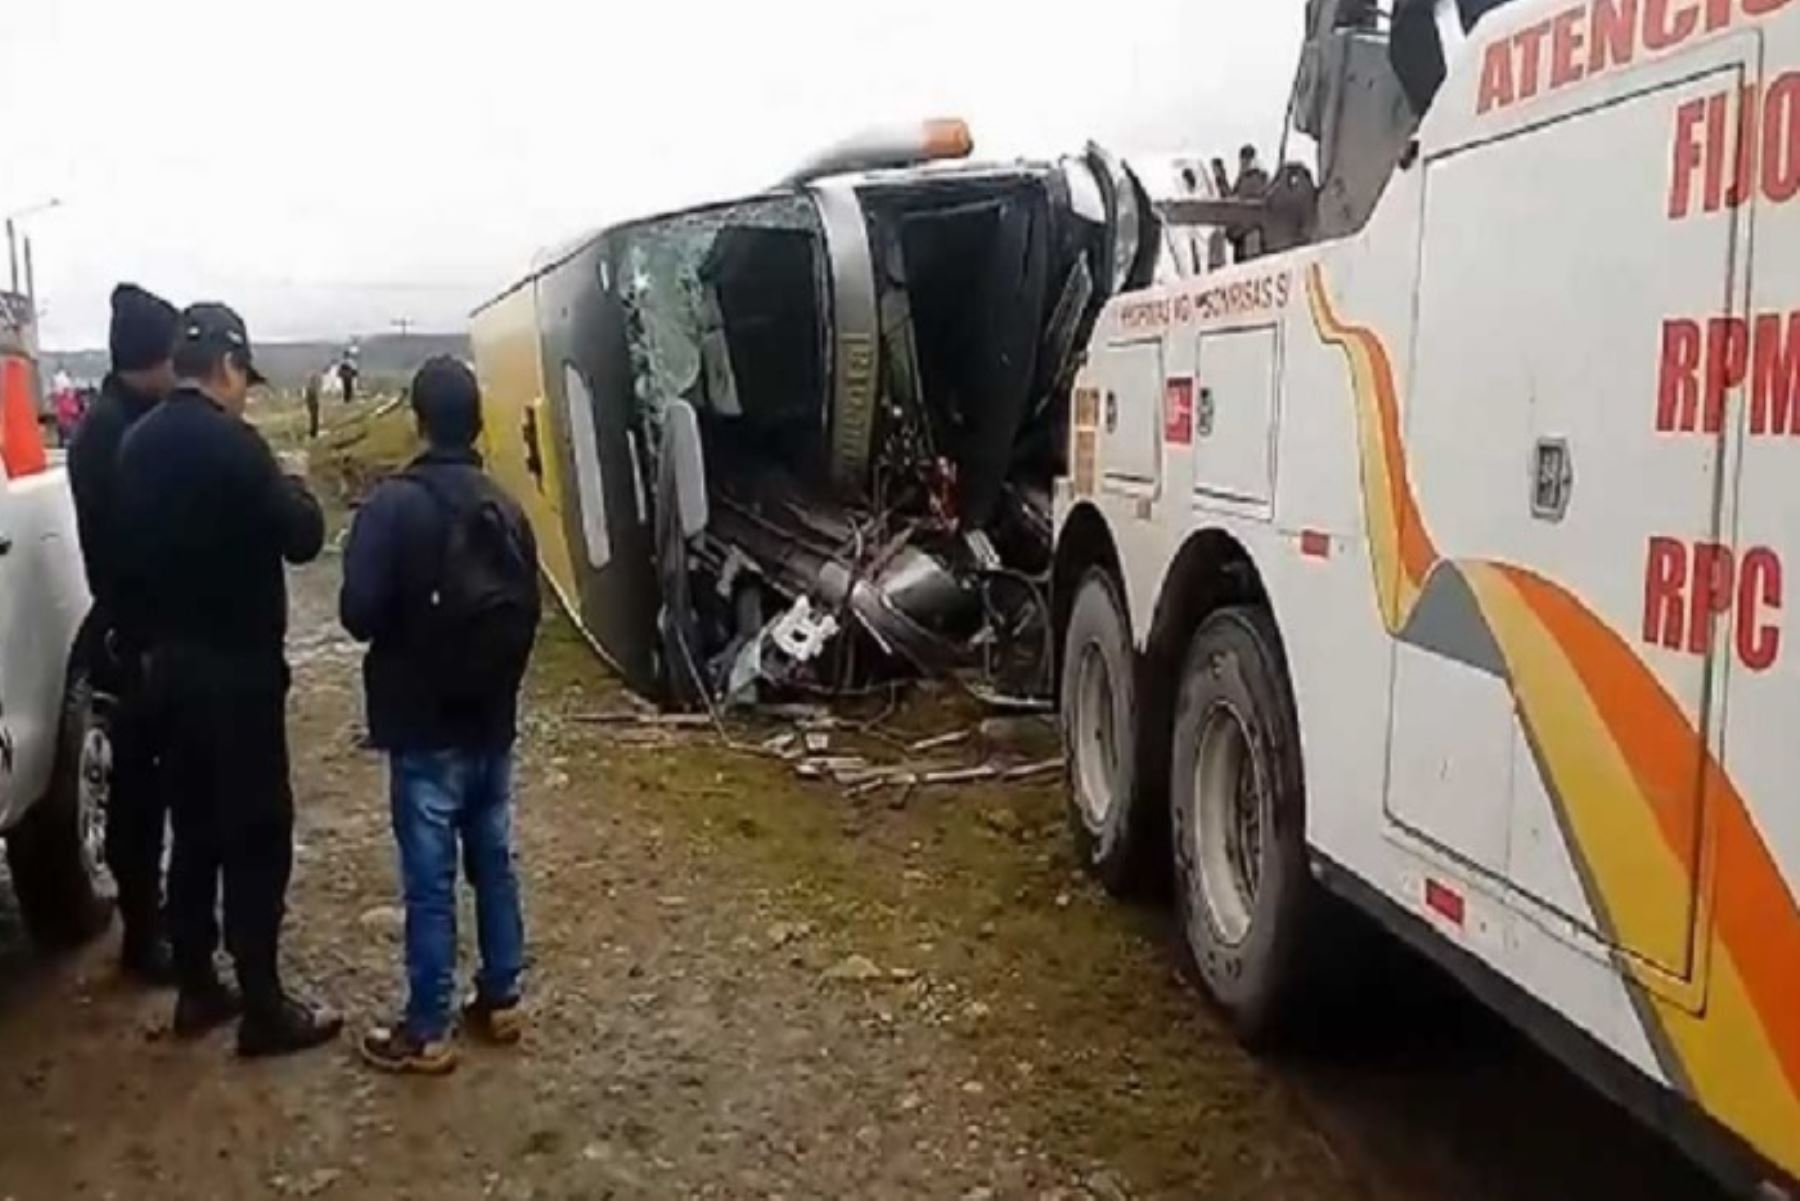 El choque de un bus y un camión ocurrido esta madrugada en la Carretera Central, tramo Pasco – La Oroya, en el kilómetro 62+300, ingreso a la provincia de Junín (Callahuay), dejó dos personas fallecidas y más de 30 heridos.